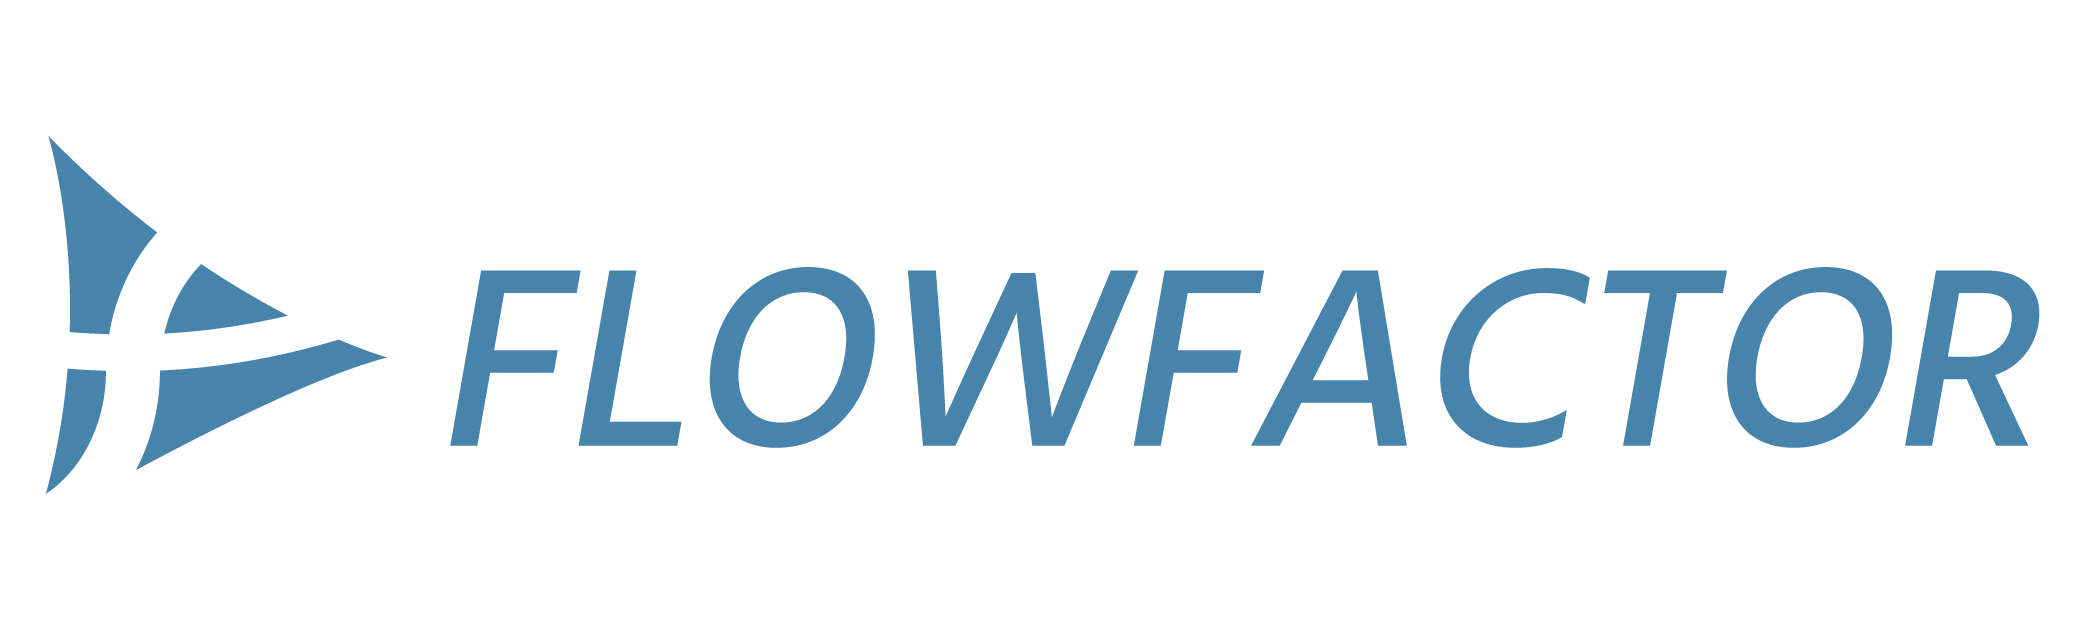 Flowfactor